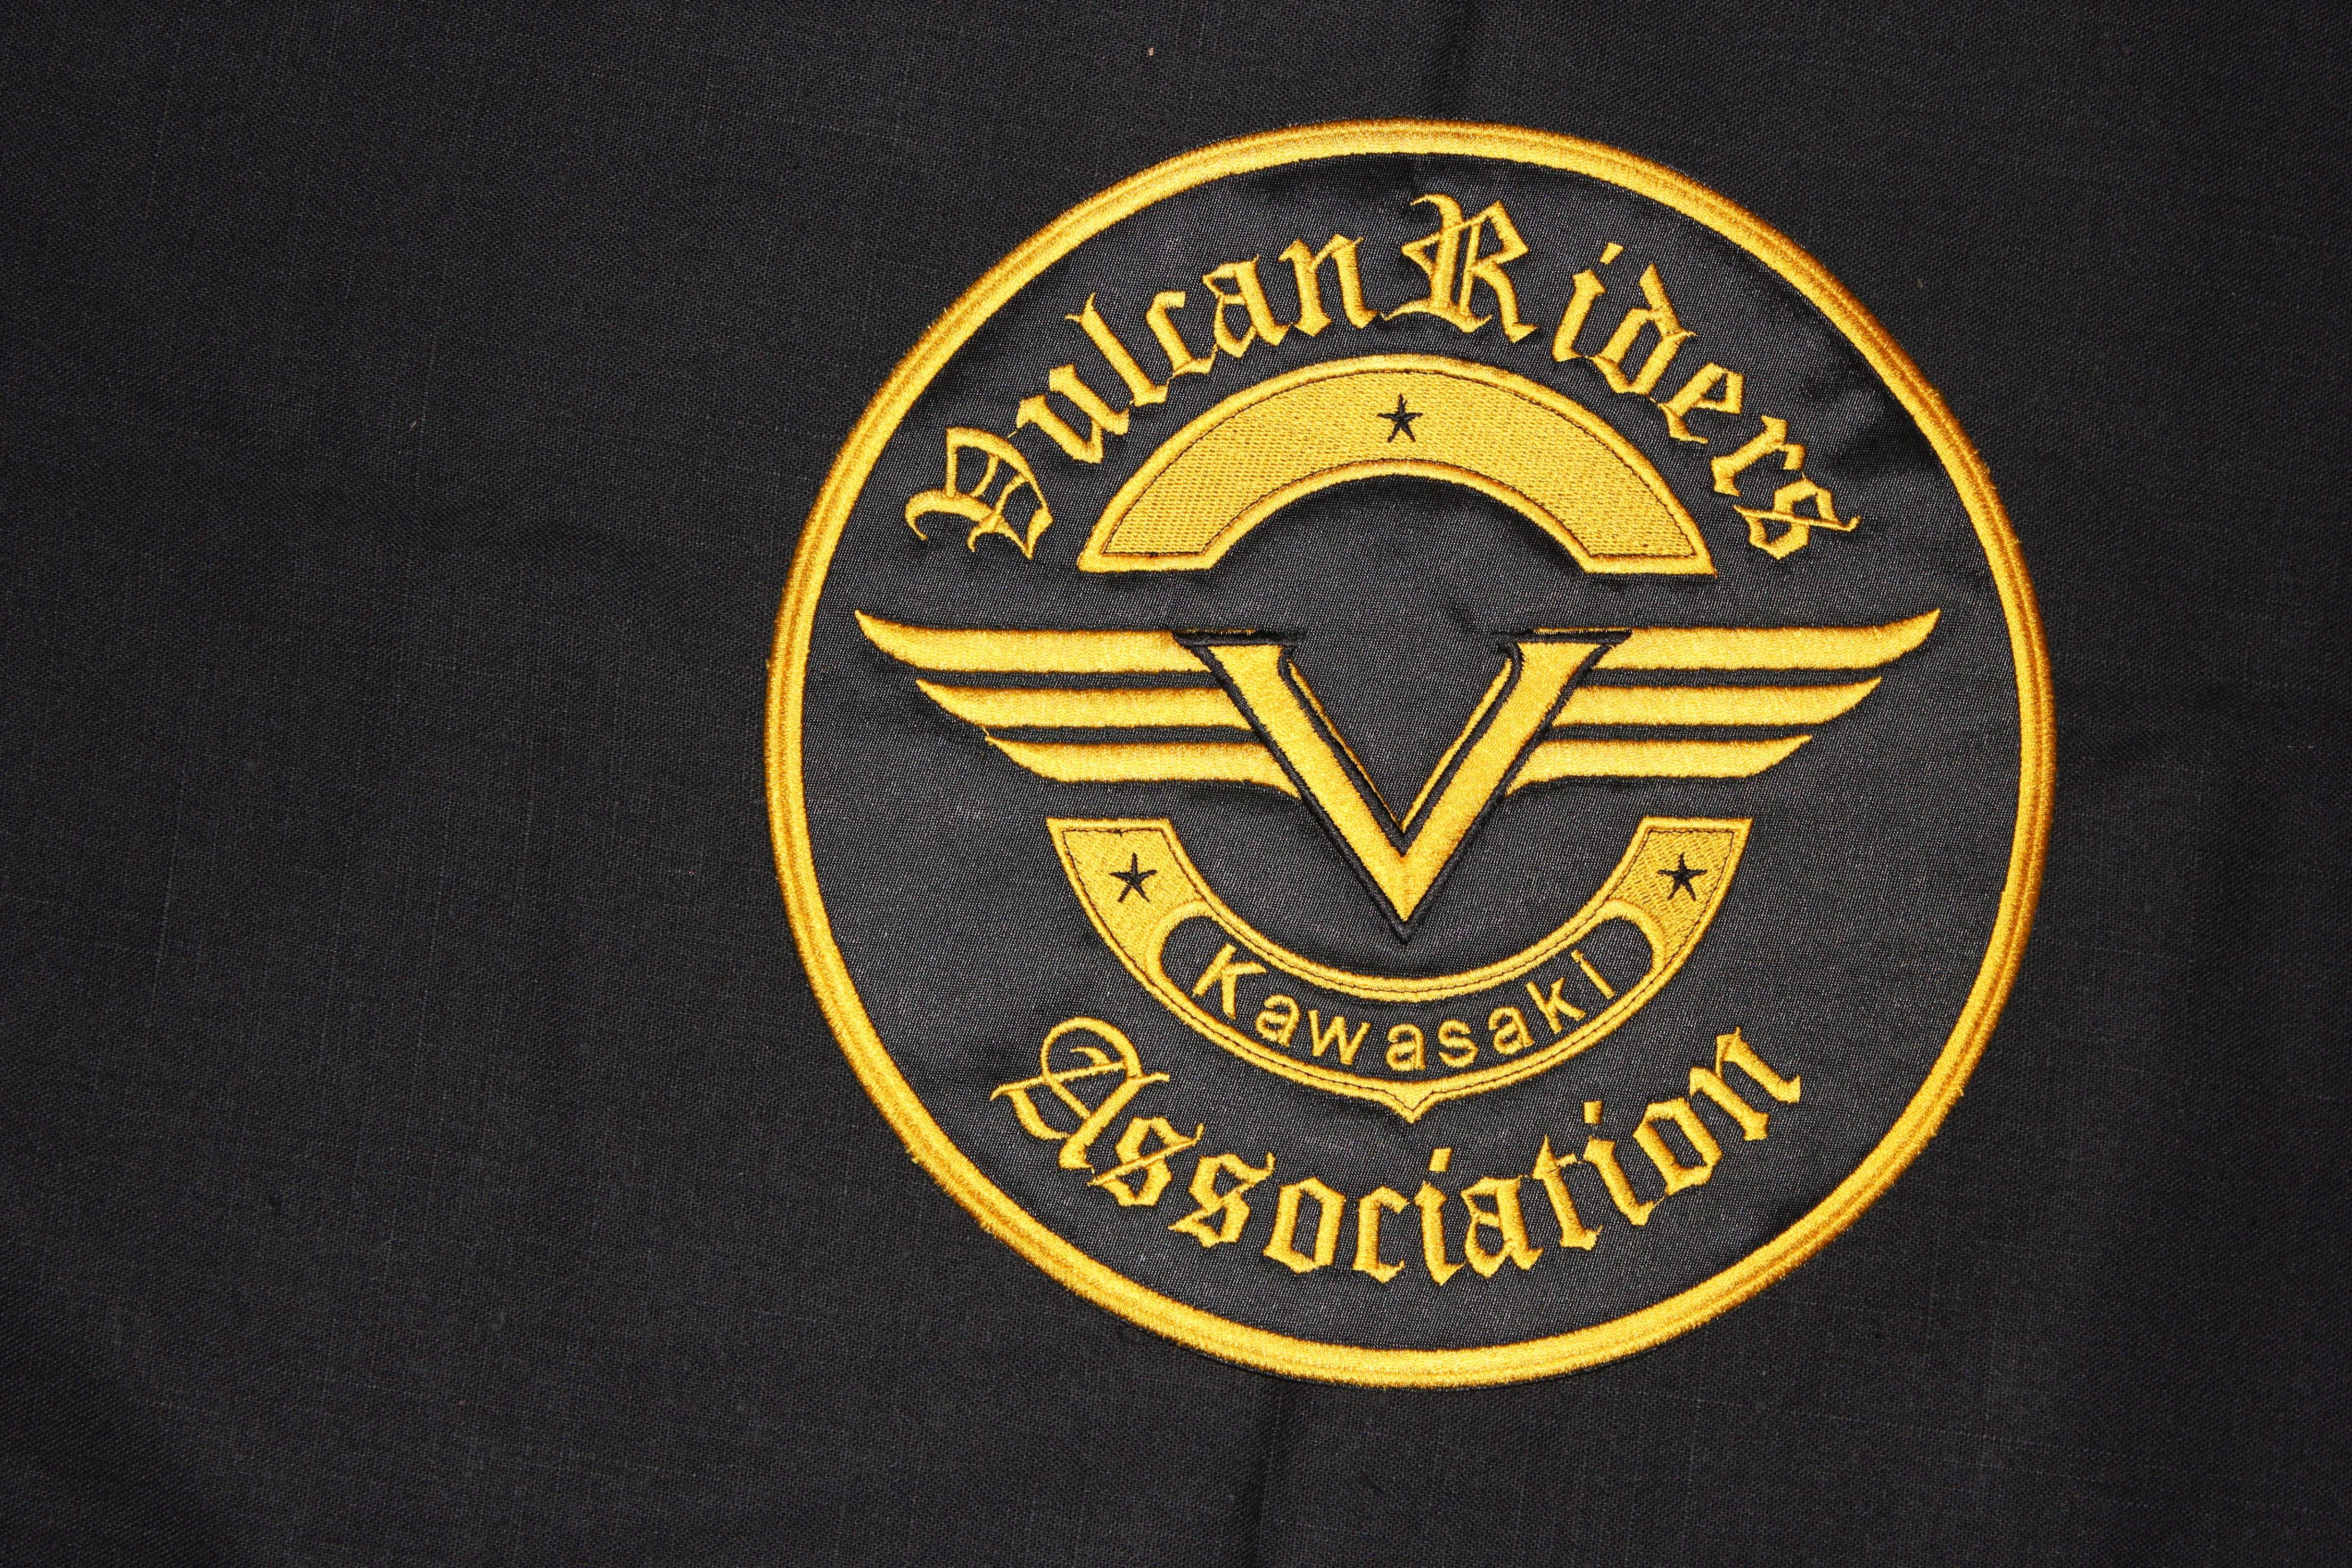 10" Vulcan riders association patch